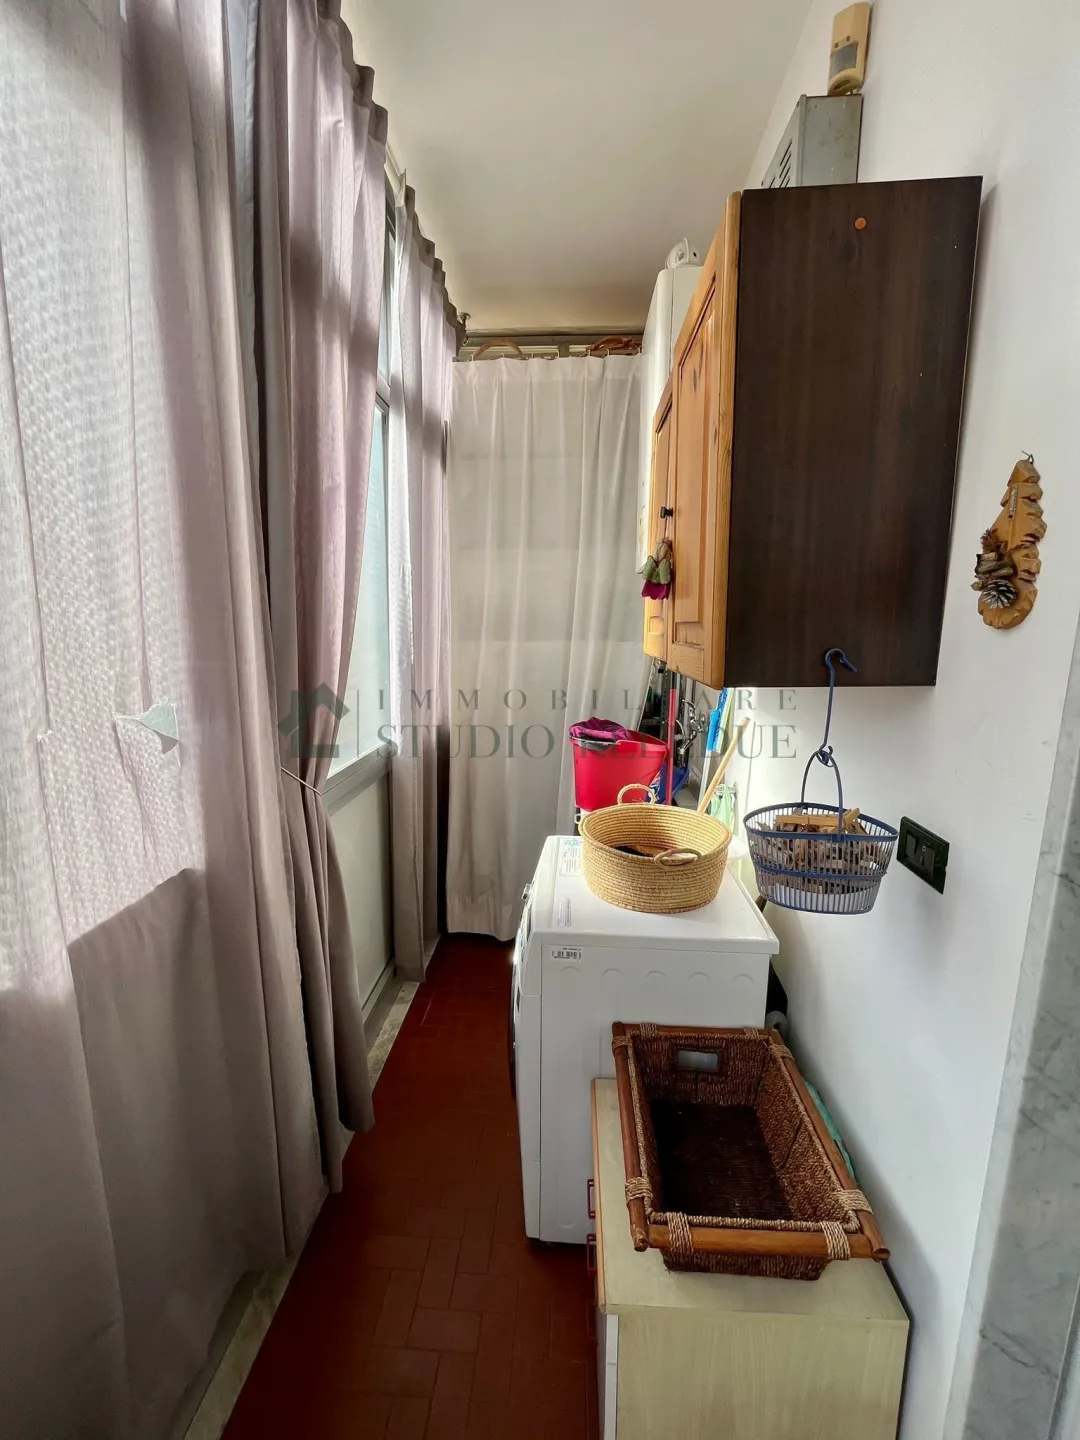 Immagine per Appartamento in vendita a Bari via Brigata Bari 106